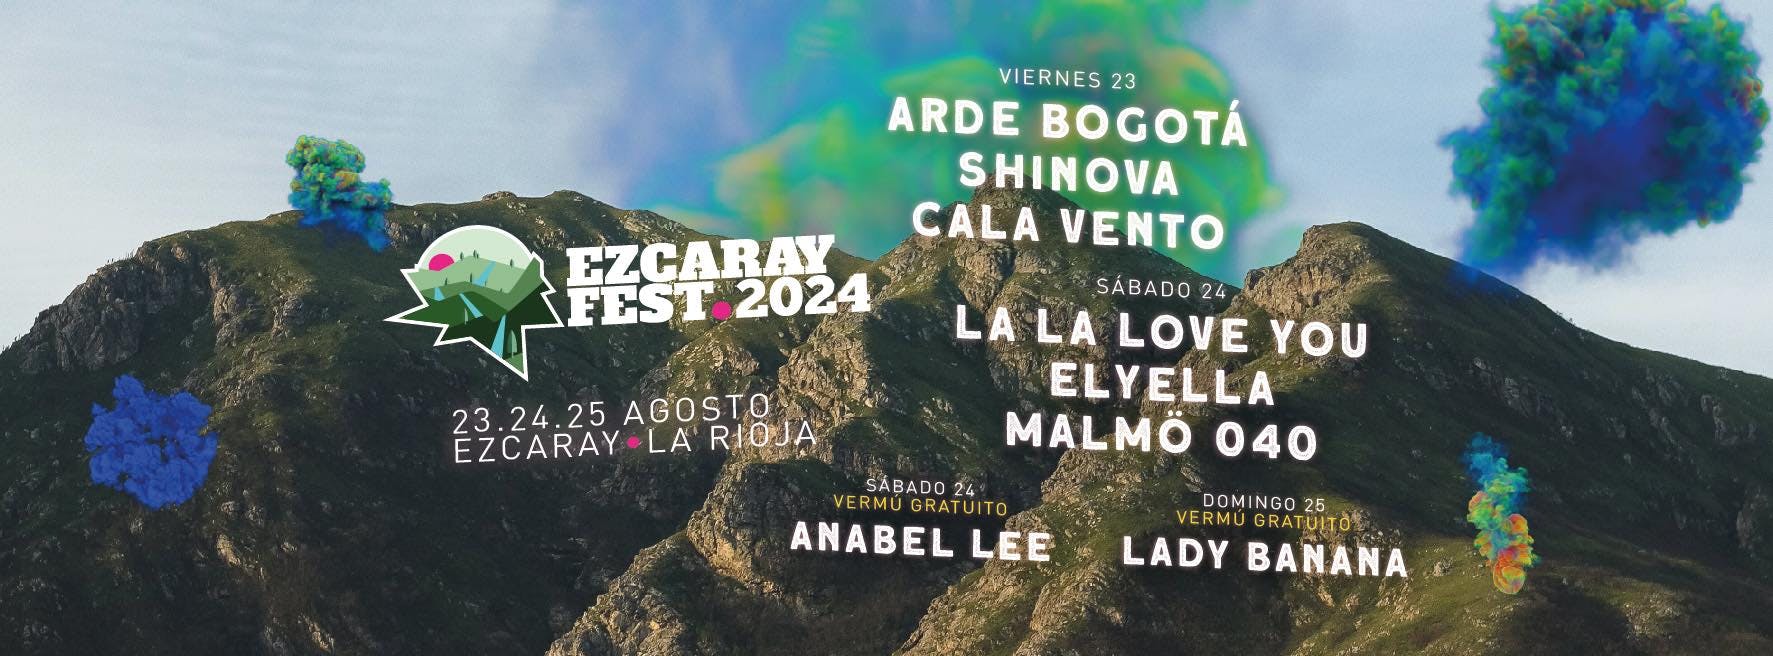 Imagen del evento: Ezcaray Fest